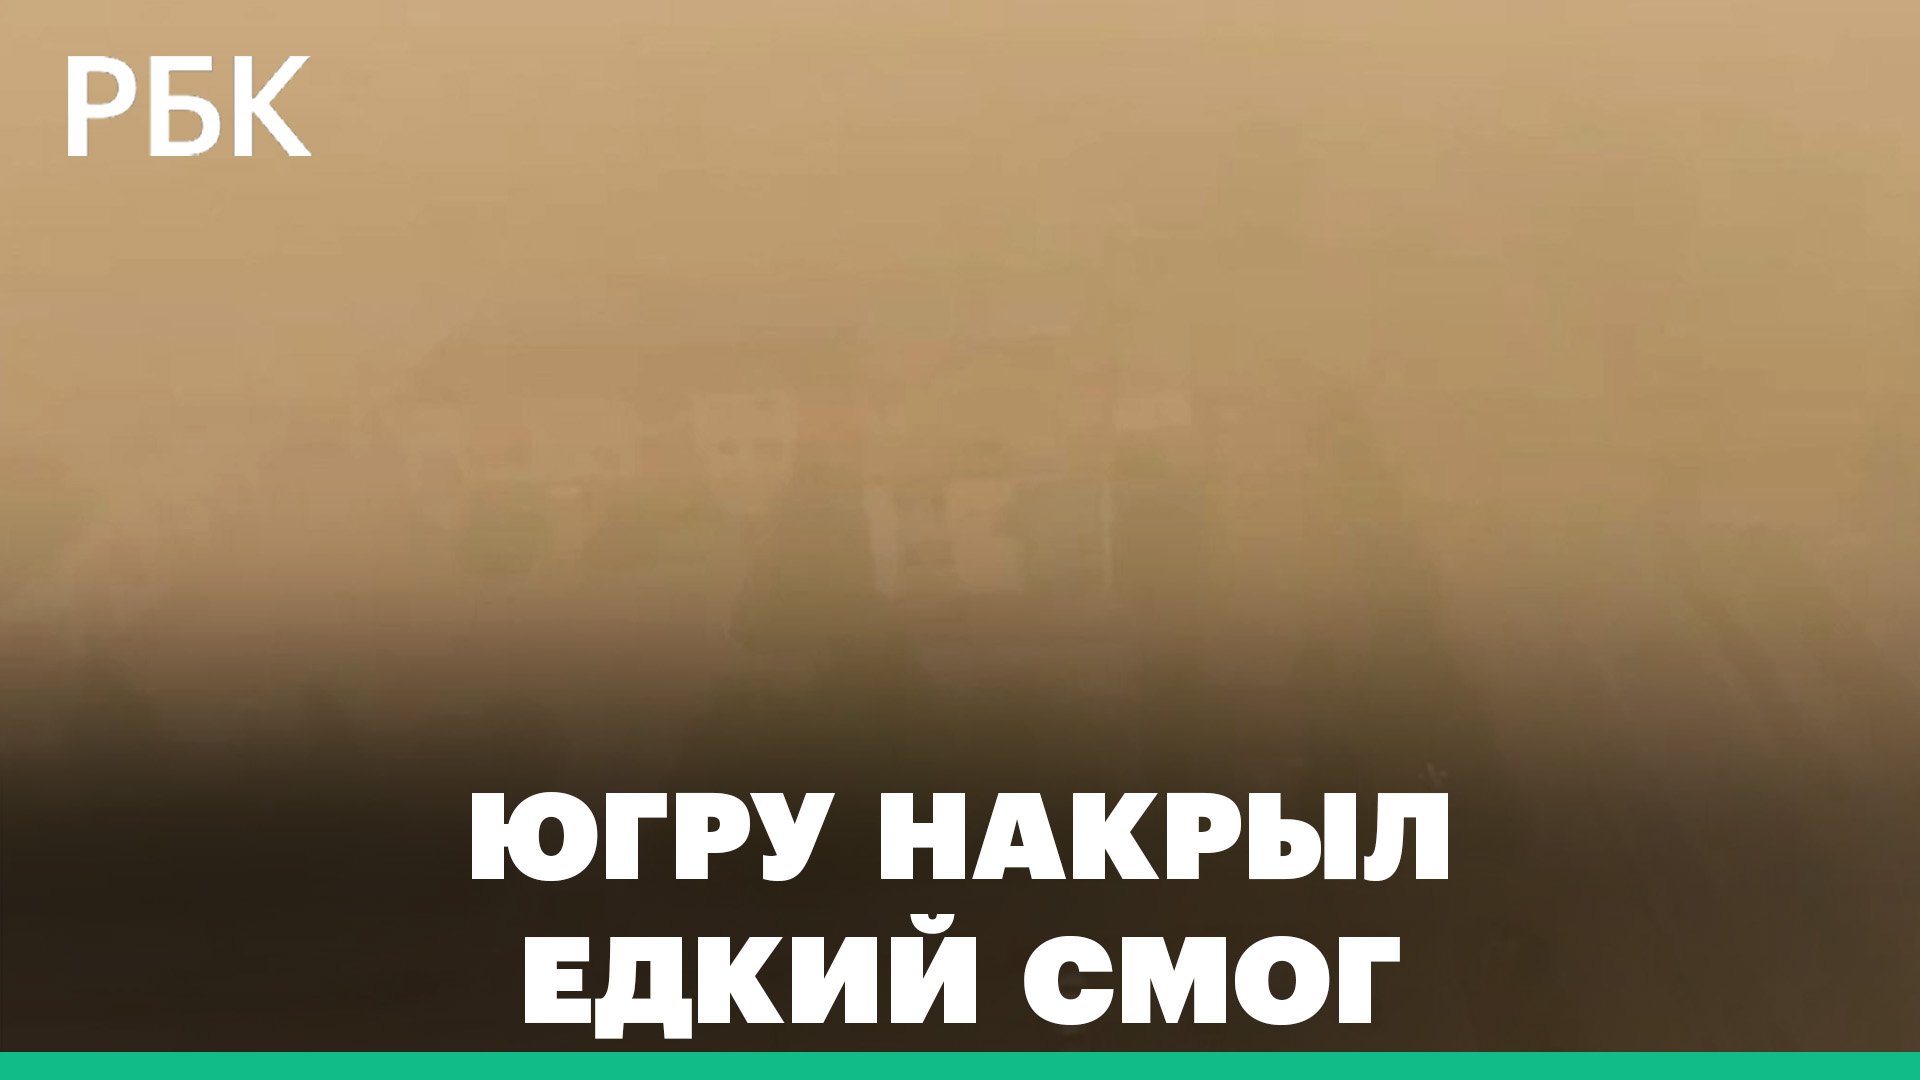 Смог от лесных пожаров накрыл районы ХМАО. Авиация не может добраться до горящего заповедника